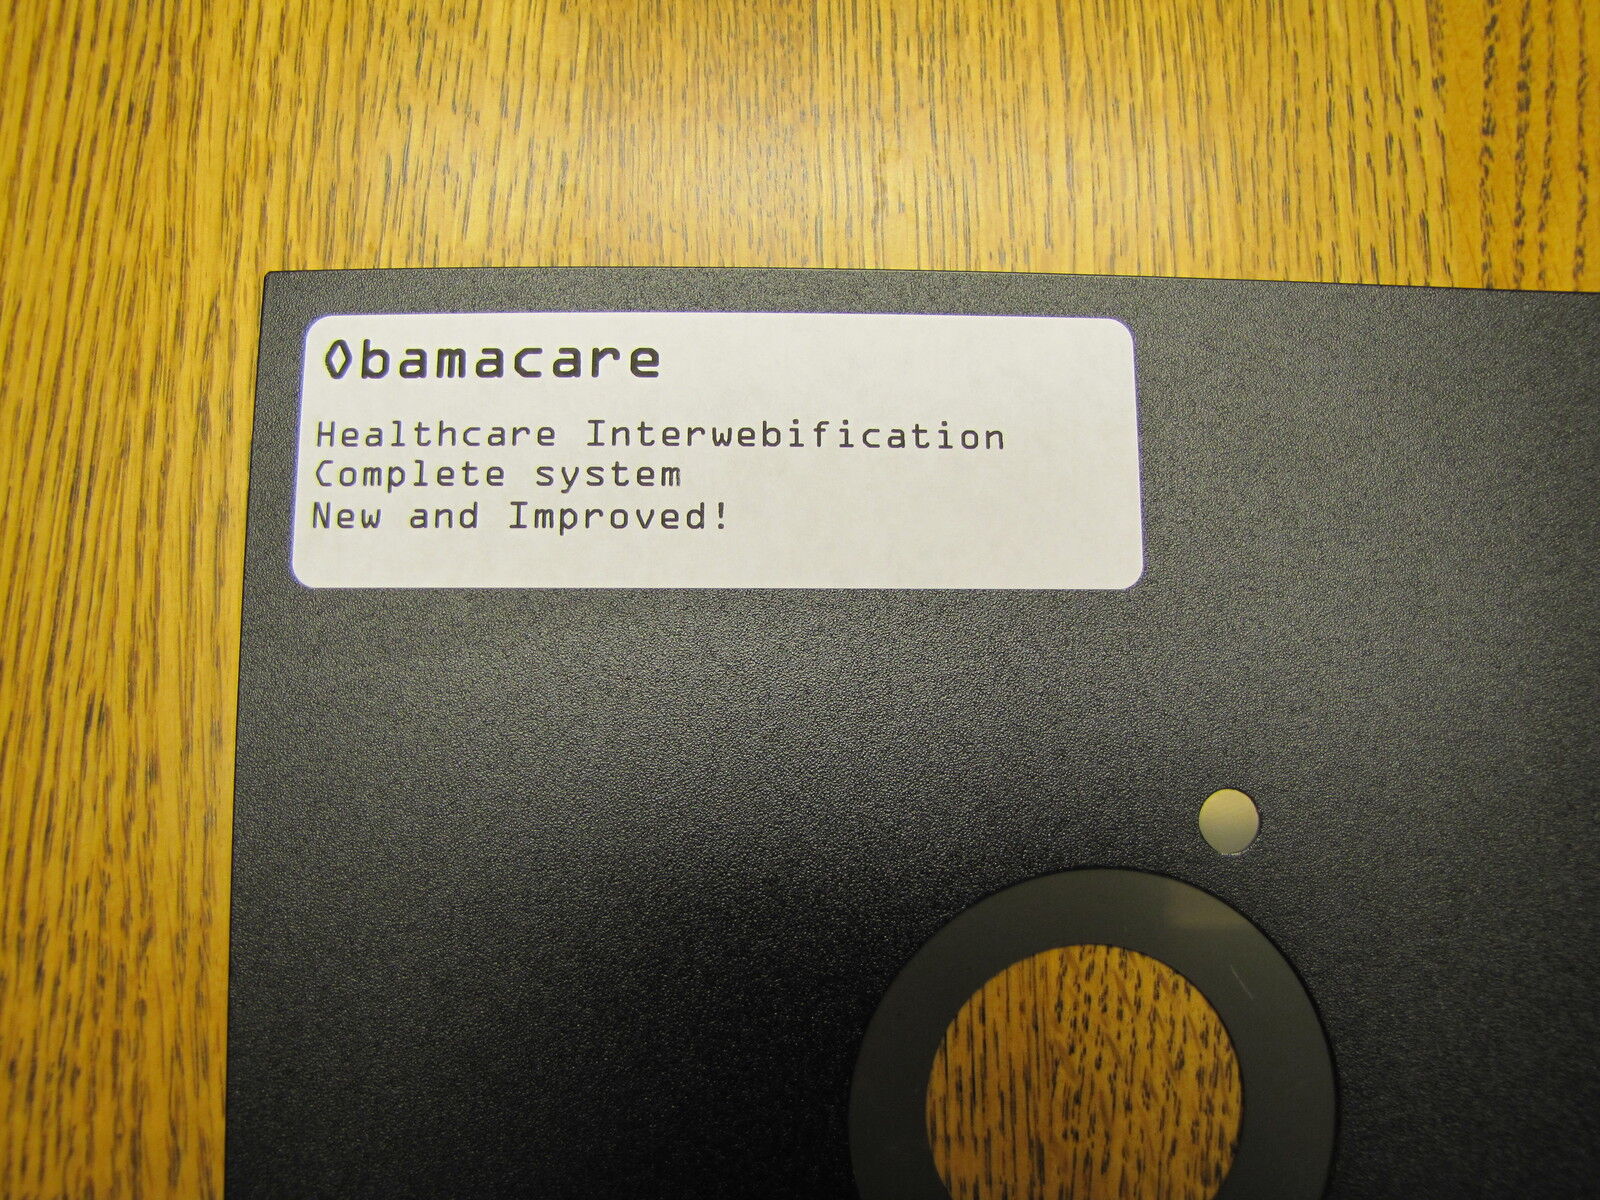 Vintage 8" Floppy Disk Obamacare Healthcare Interwebification, A Big Joke!